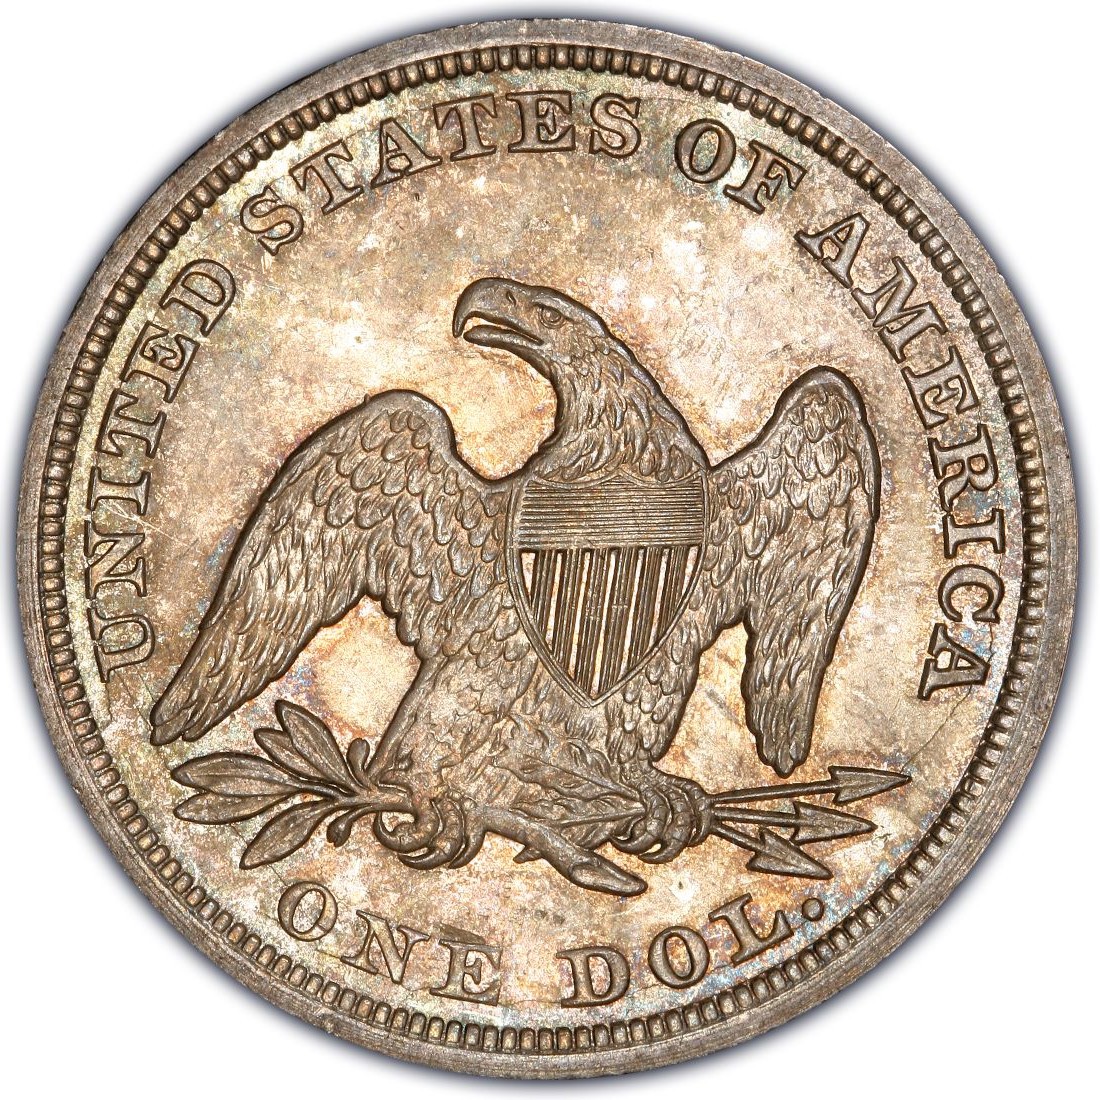 coin value 1972 liberty silver dollar